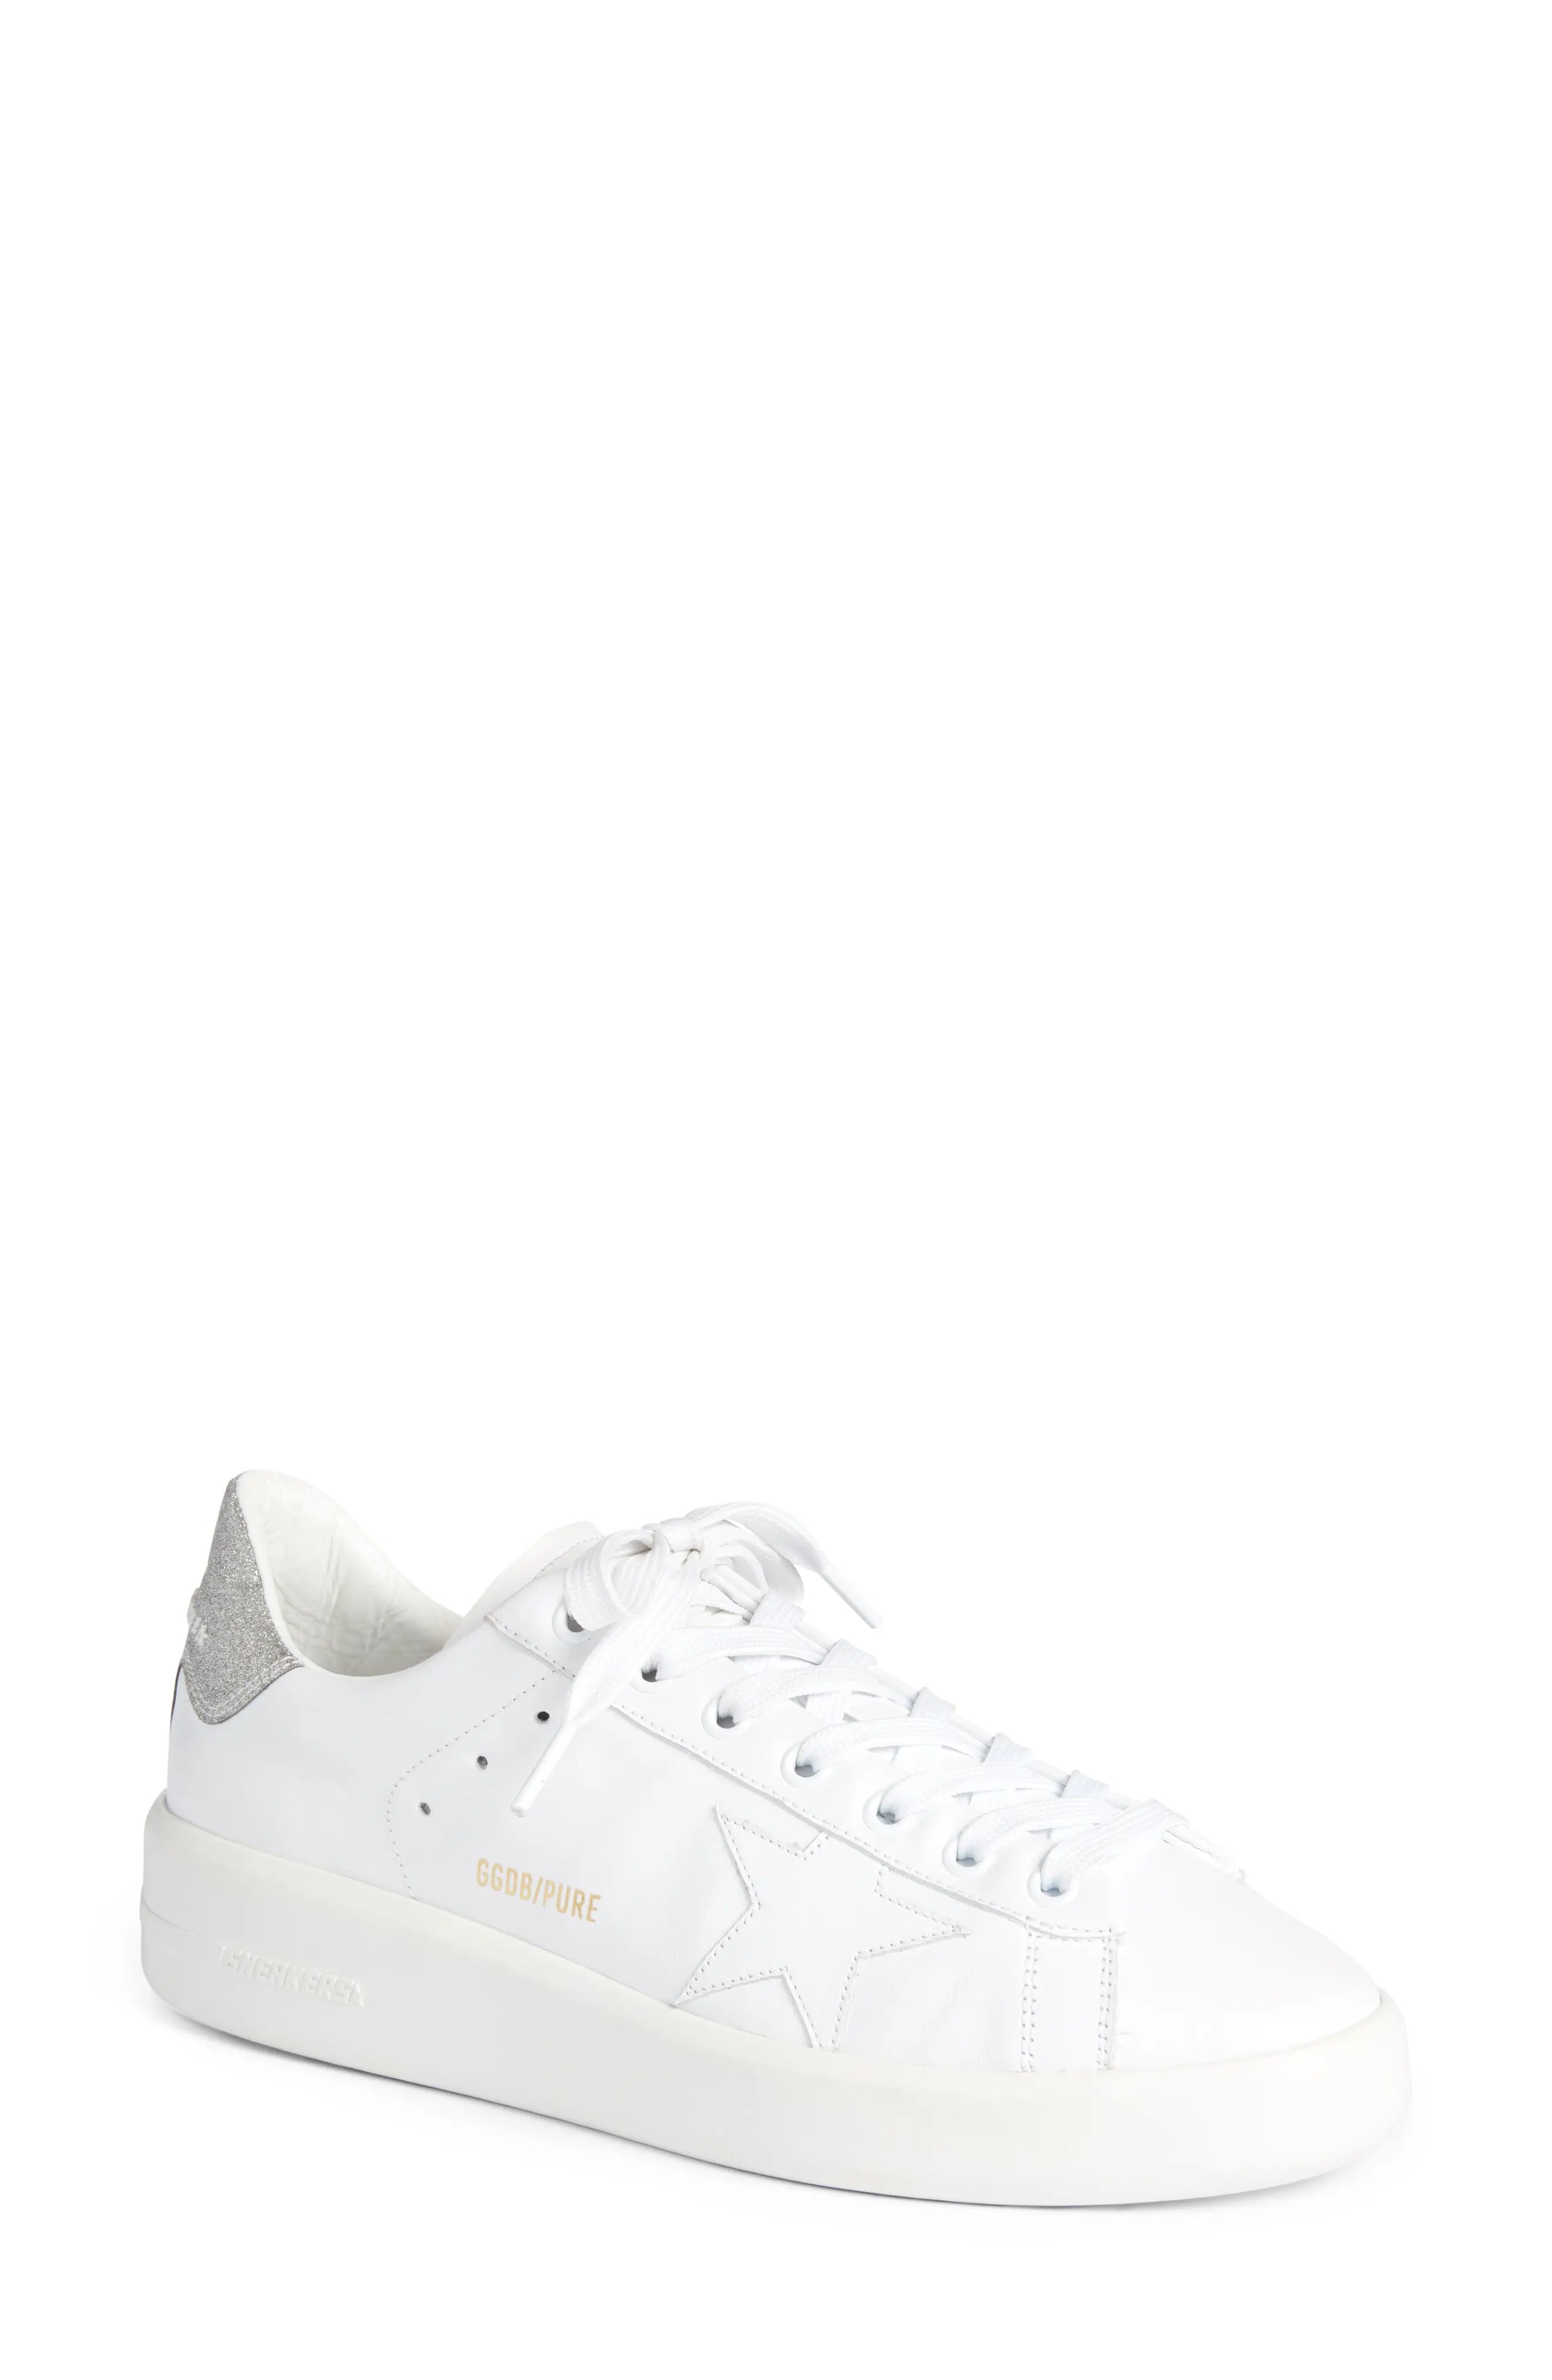 Women's Golden Goose Purestar Sneaker, Size 5US - White | Nordstrom